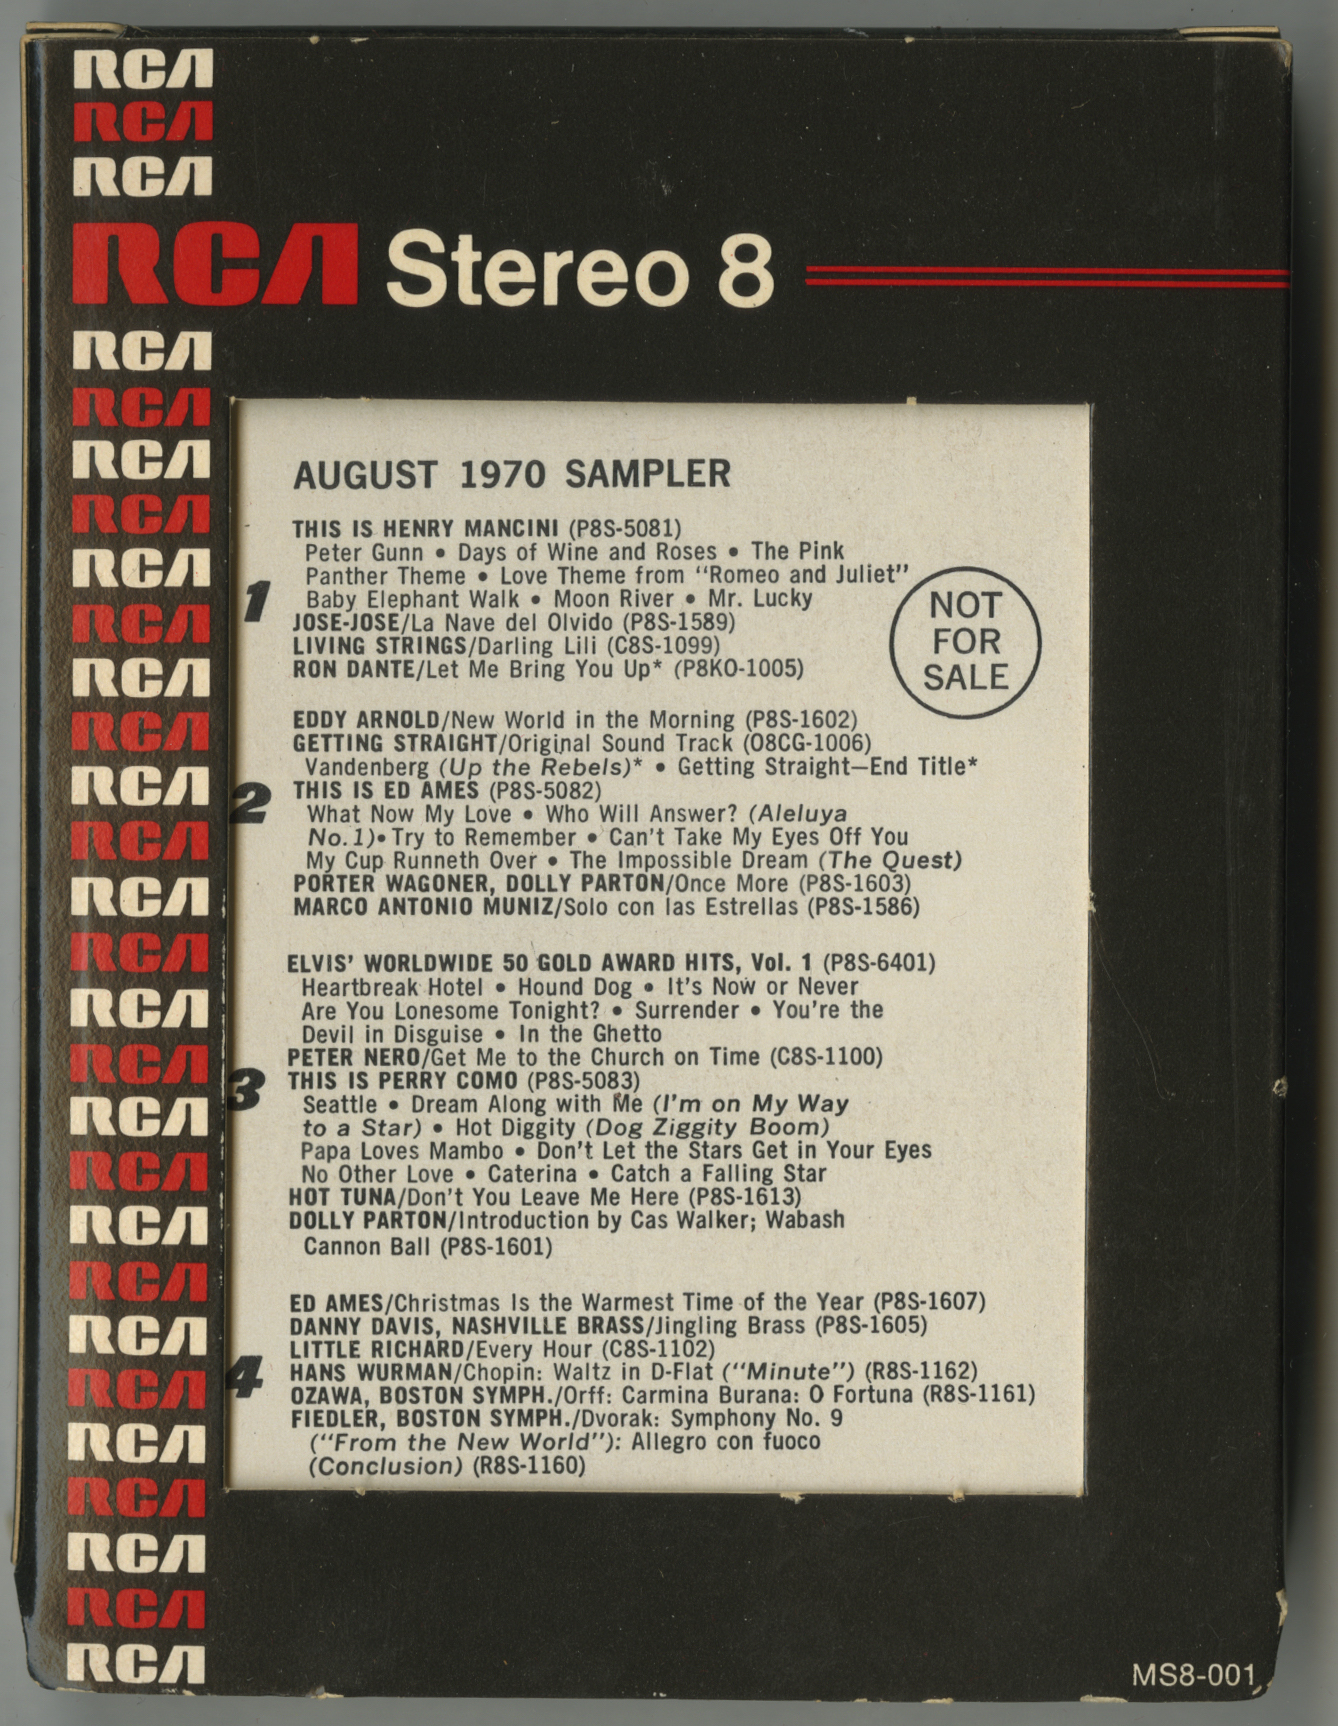 August 1970 SAMPLER